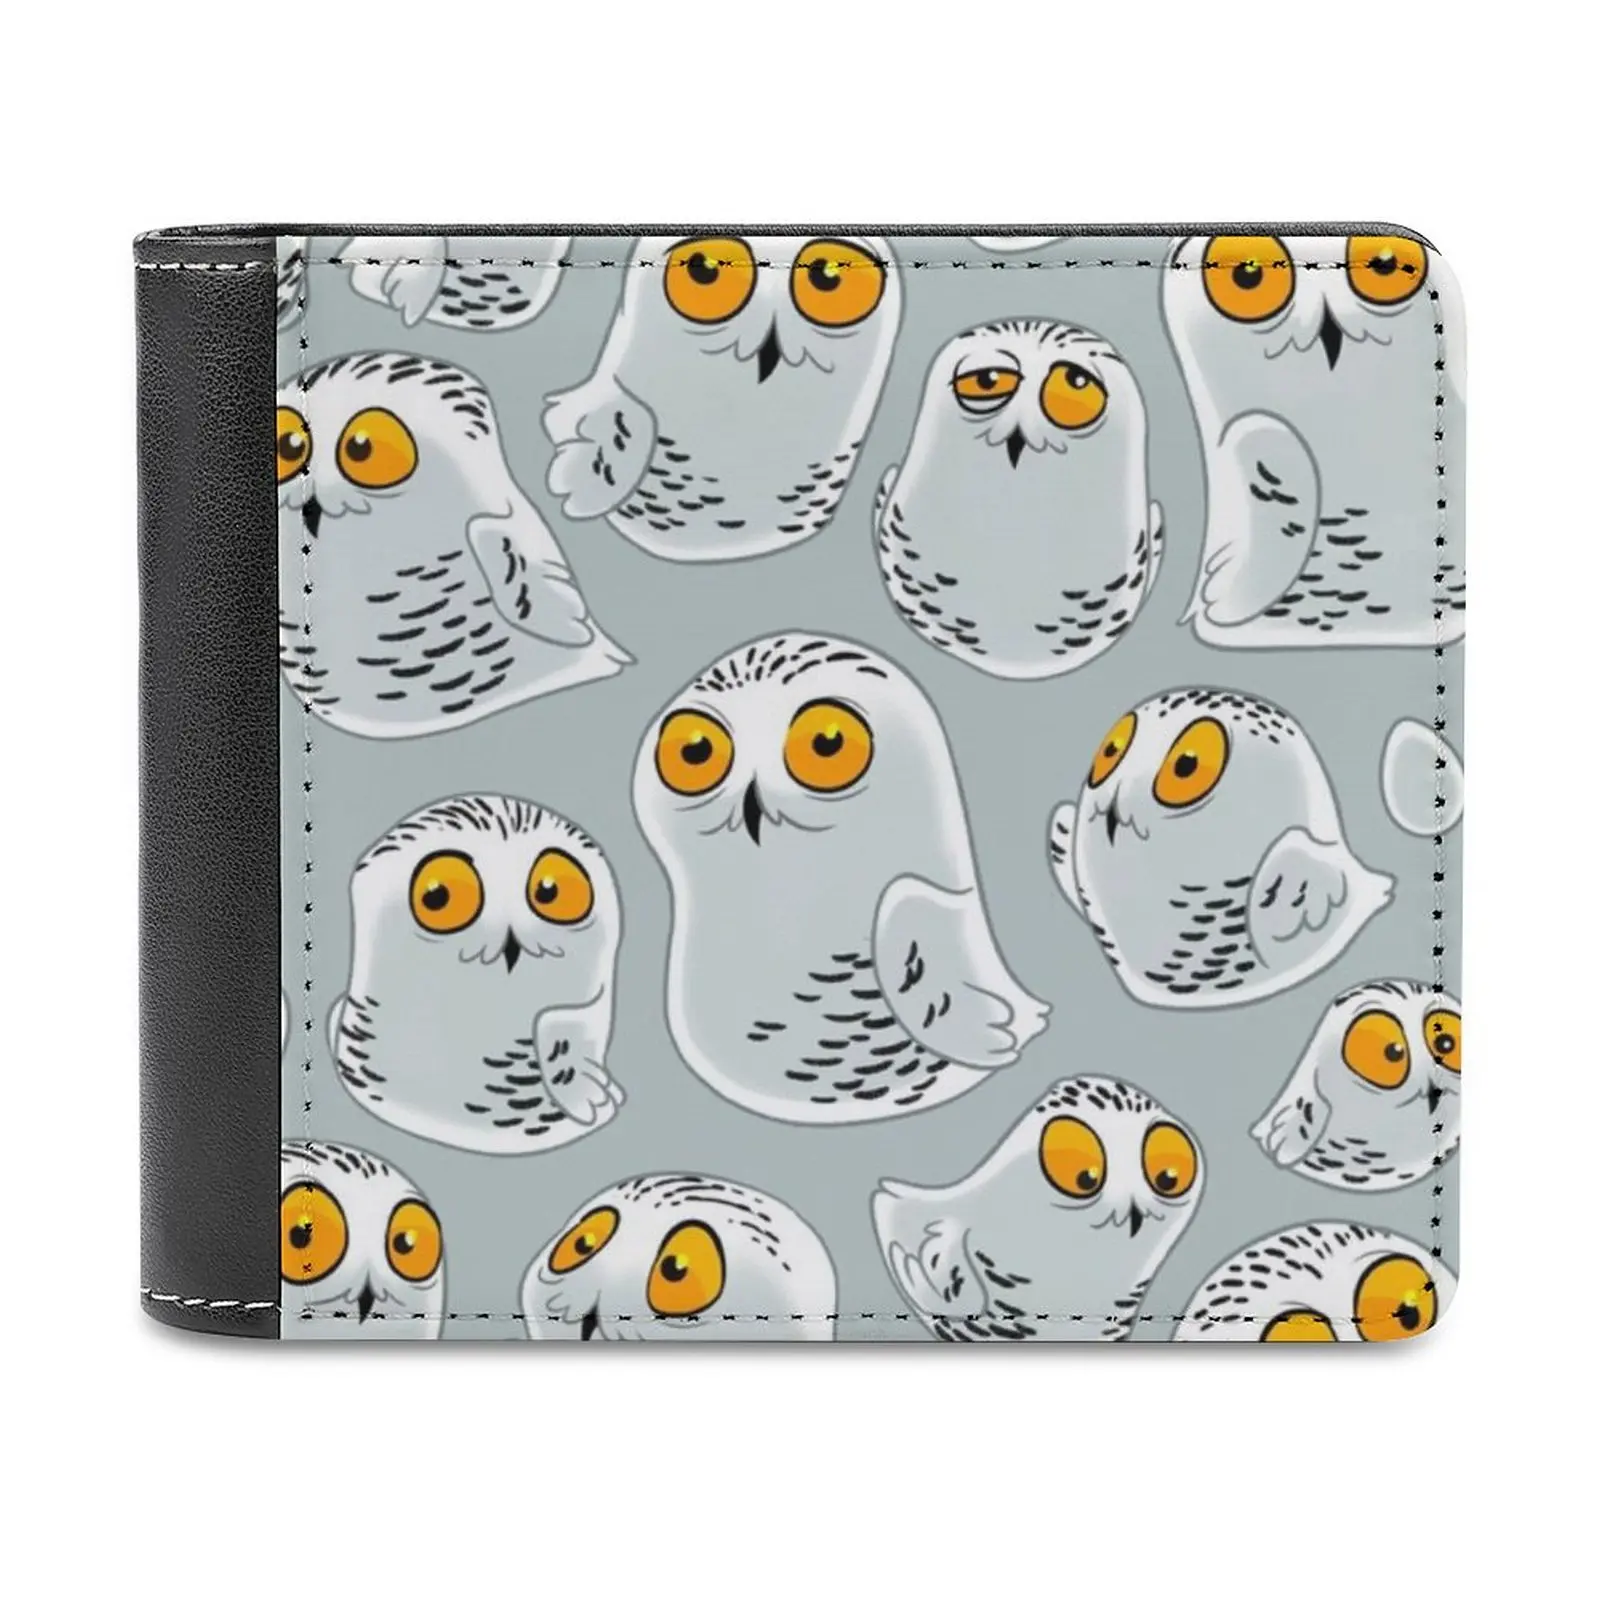 

Мужской кошелек Bubo Scandiacus с узором заснеженных сов, легкий портативный бумажник для отдыха и путешествий, короткая стильная мужская сумочка с совой